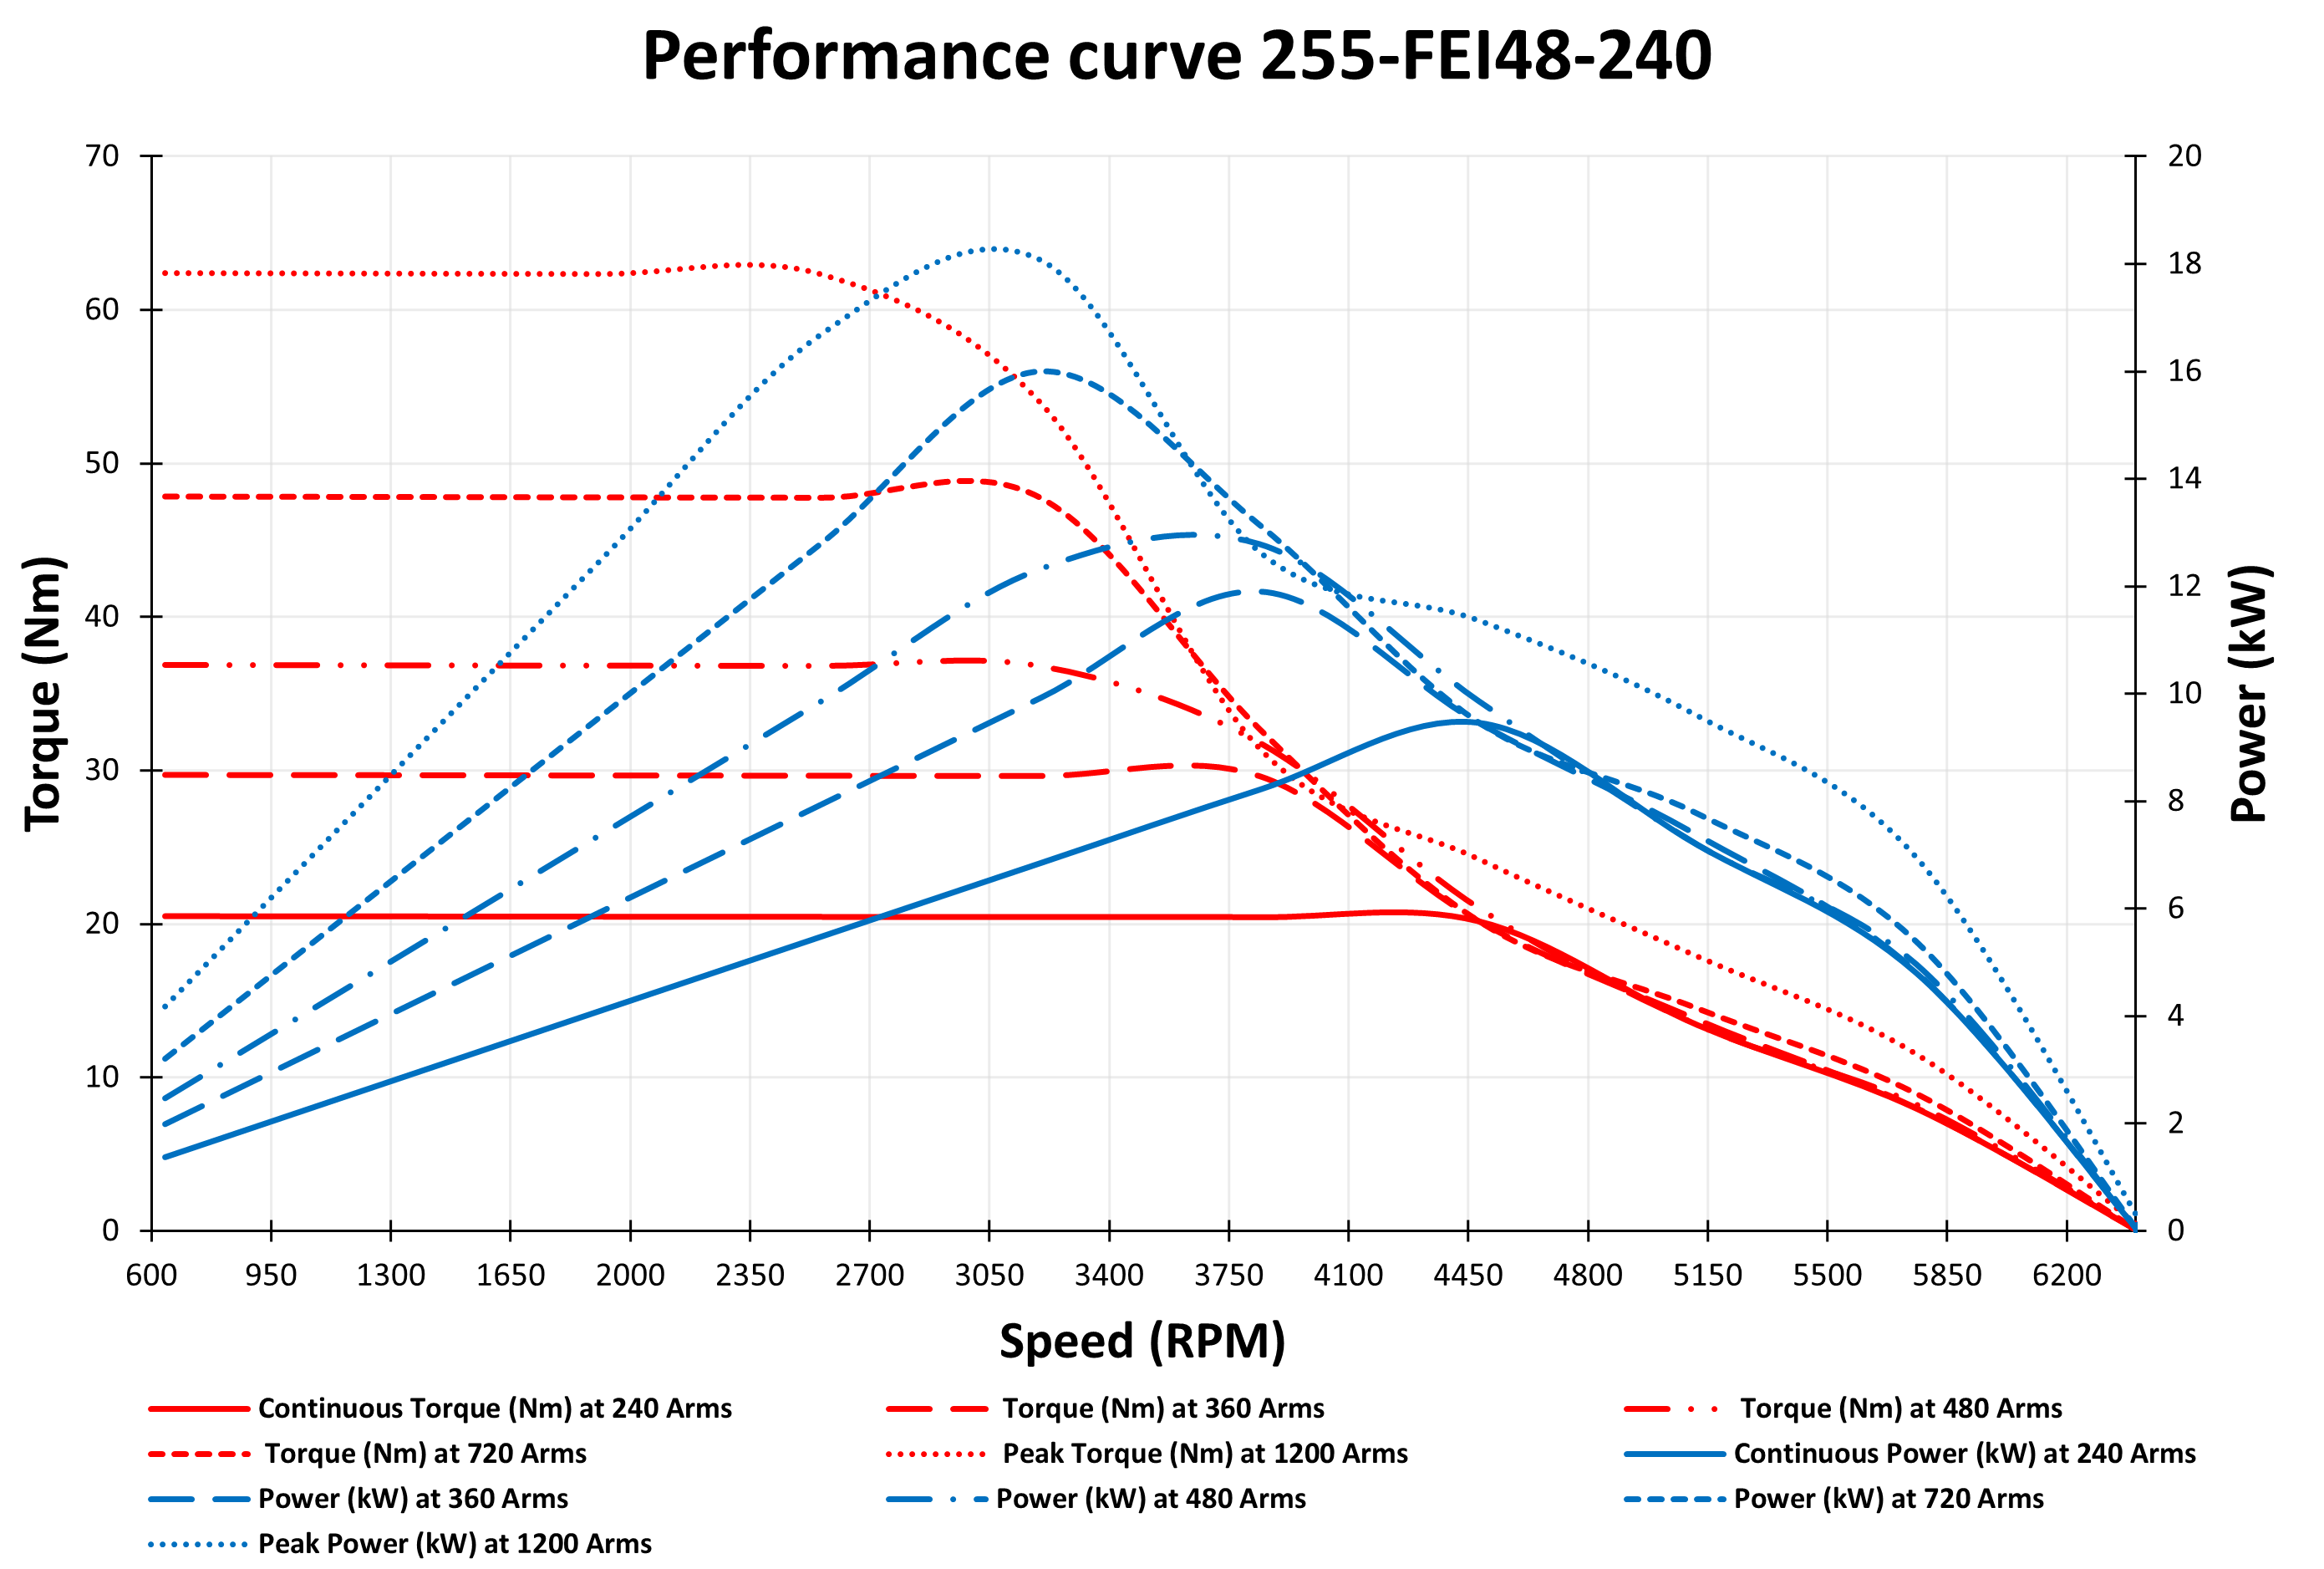 Graph for 255-FEI48-240 PMS motor